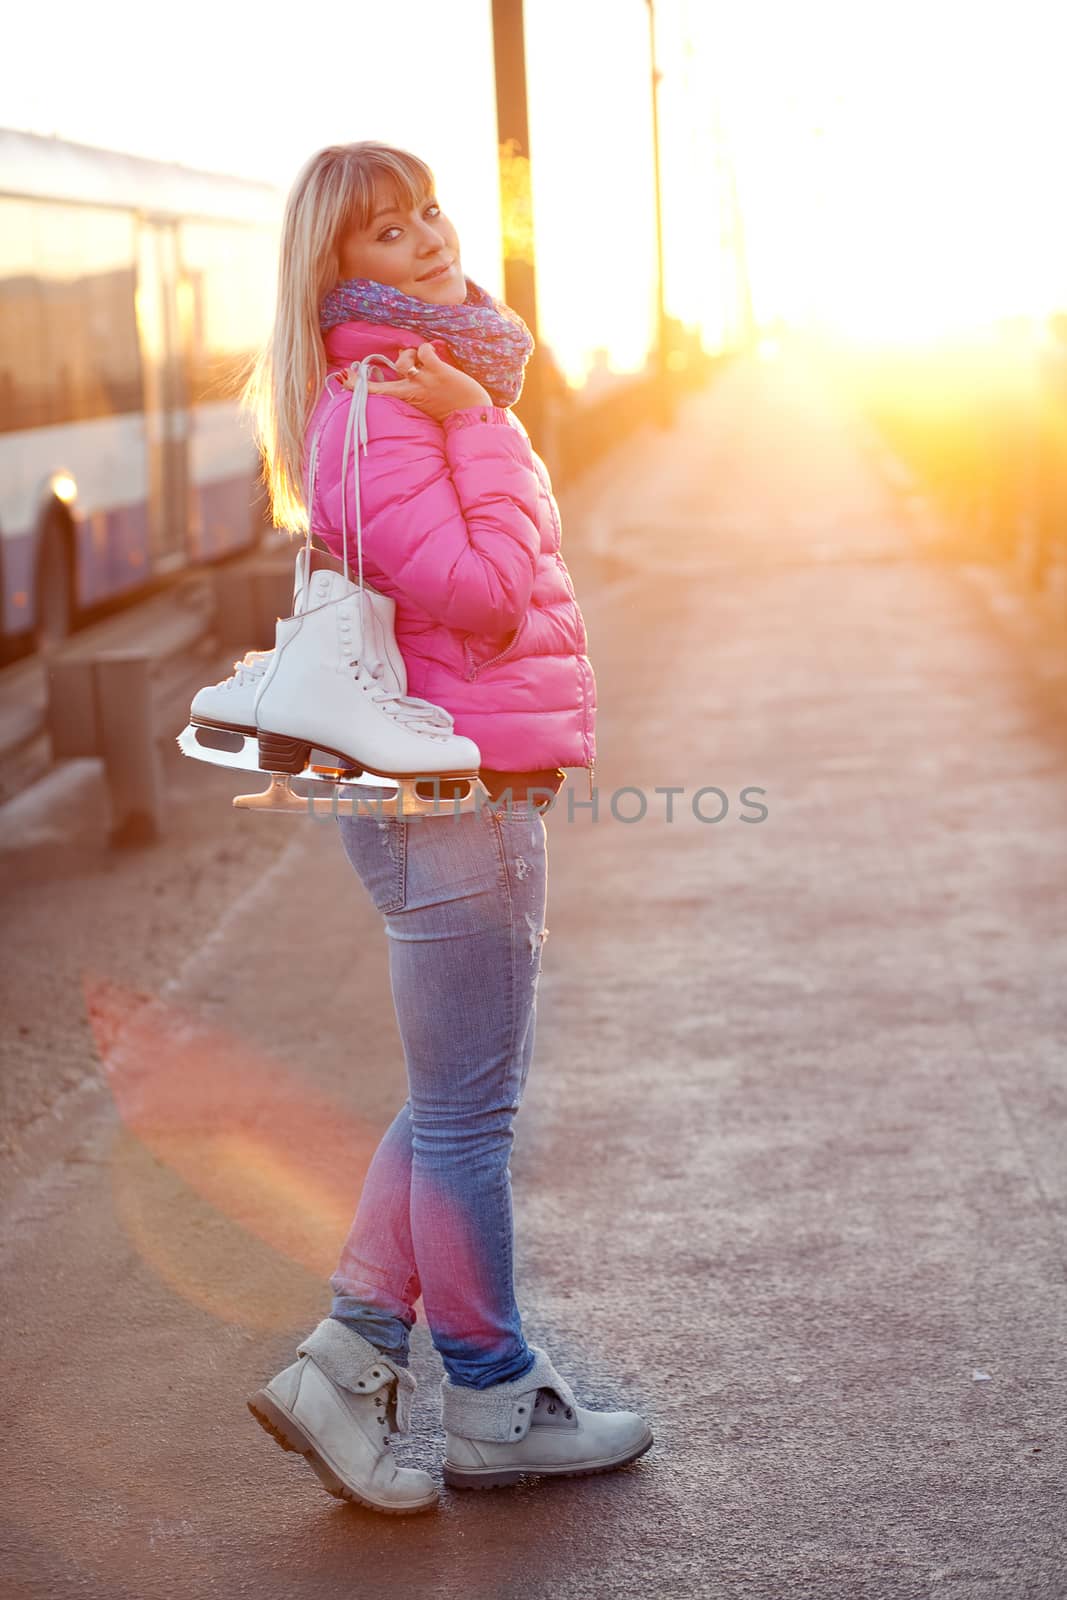 Figure skater girl on the bridge by Kor